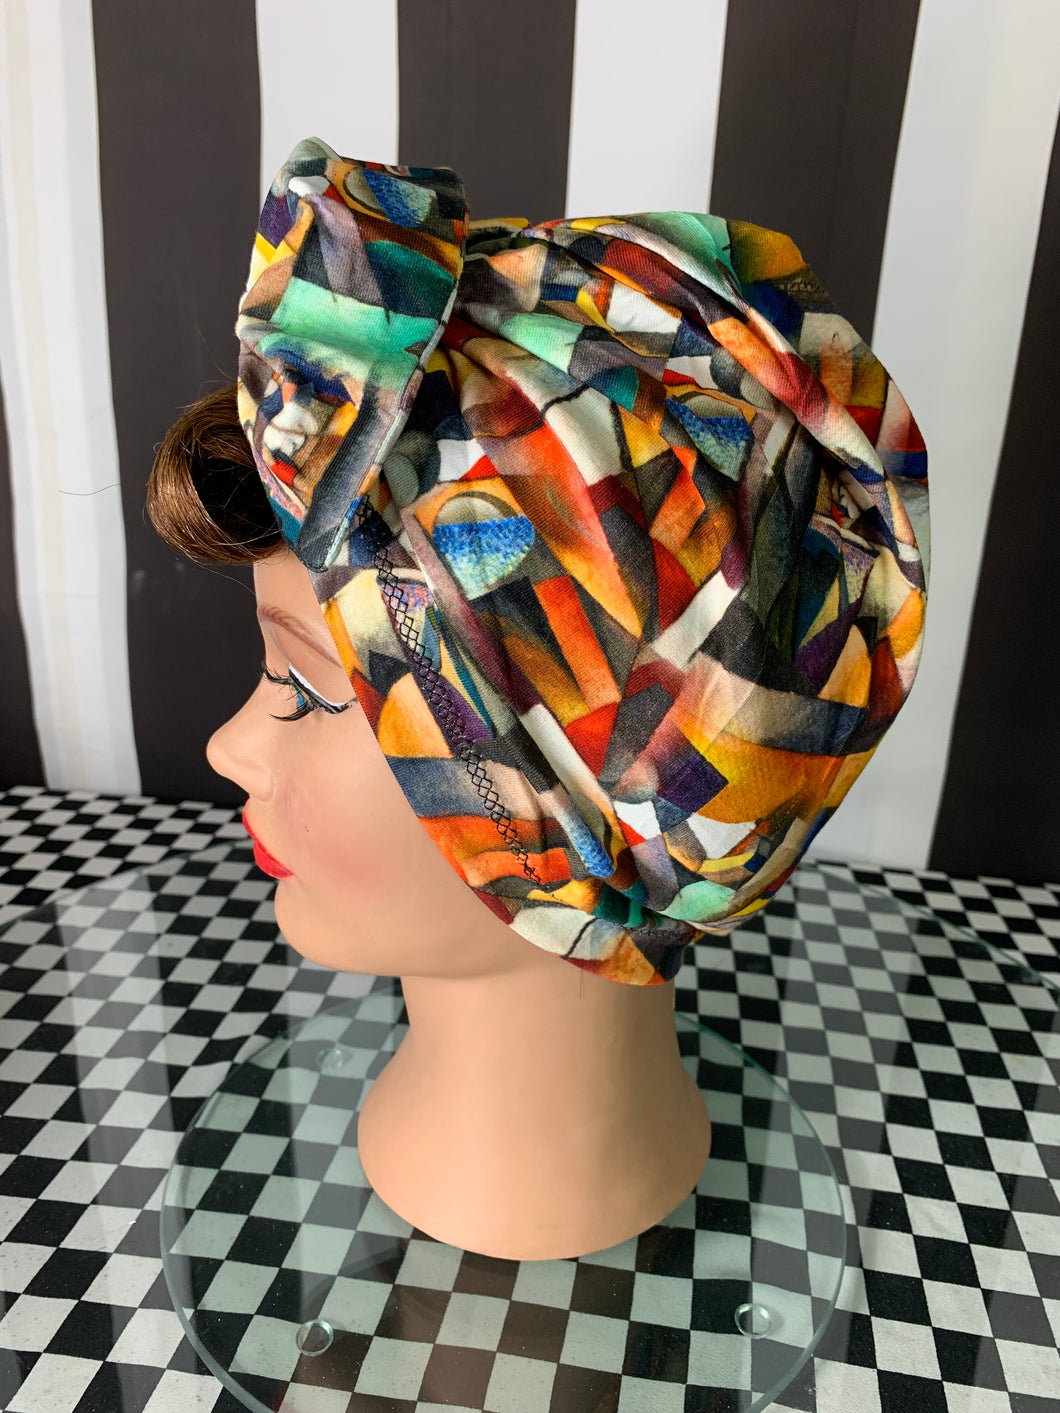 Abstract Artist fan art head wrap